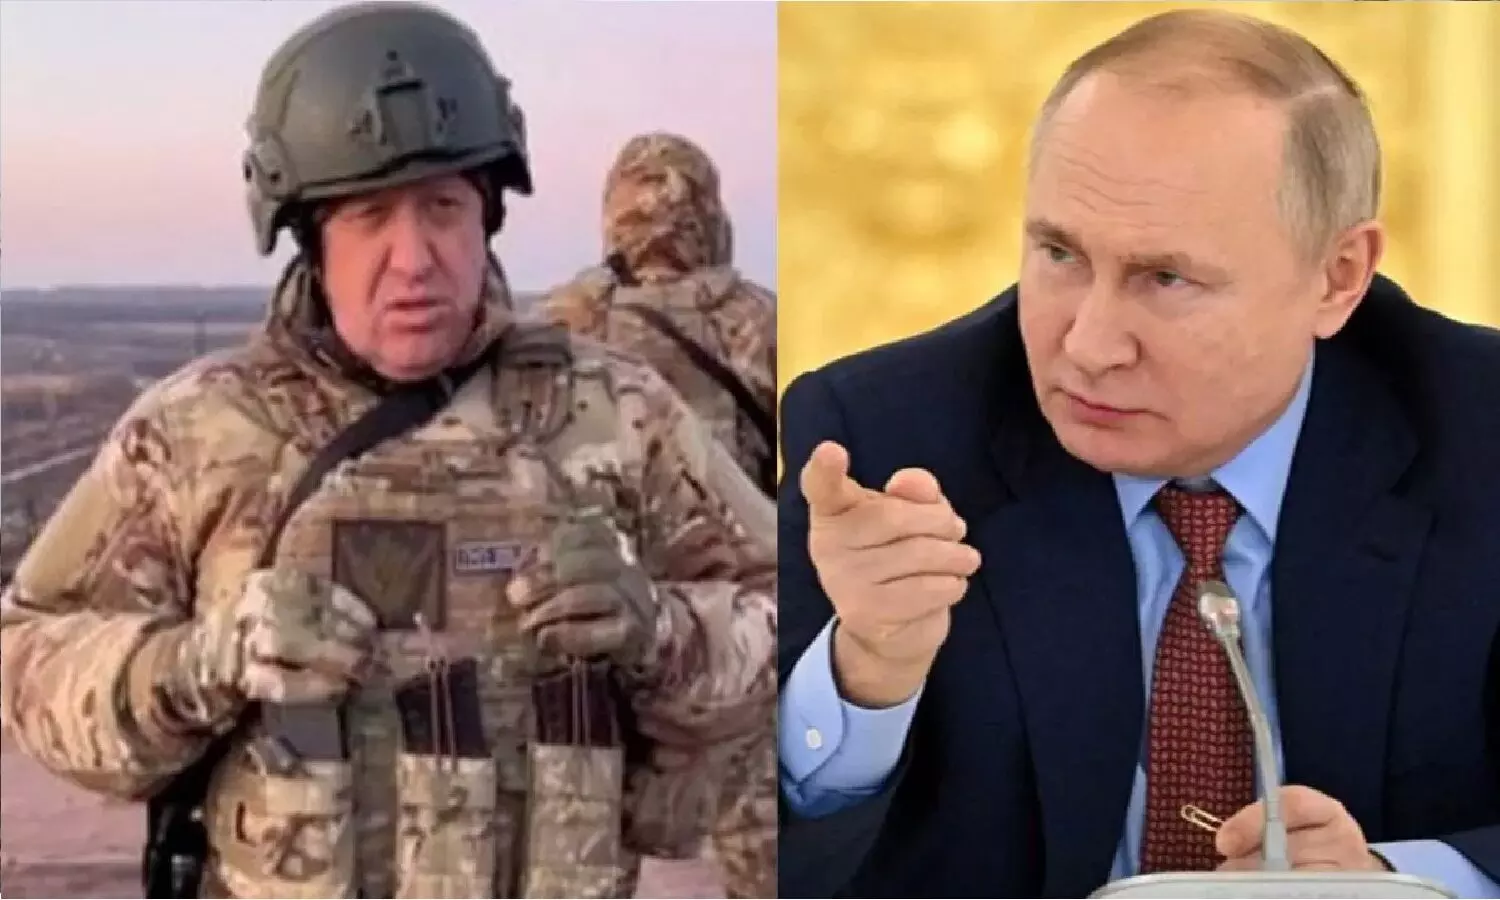 रूस और वैगनर आर्मी के बीच समझौता! बेलारूस के राष्ट्रपति से बातचीत के बाद प्रिगोजिन ने लड़ाकों को वापस लौटने के लिए कहा